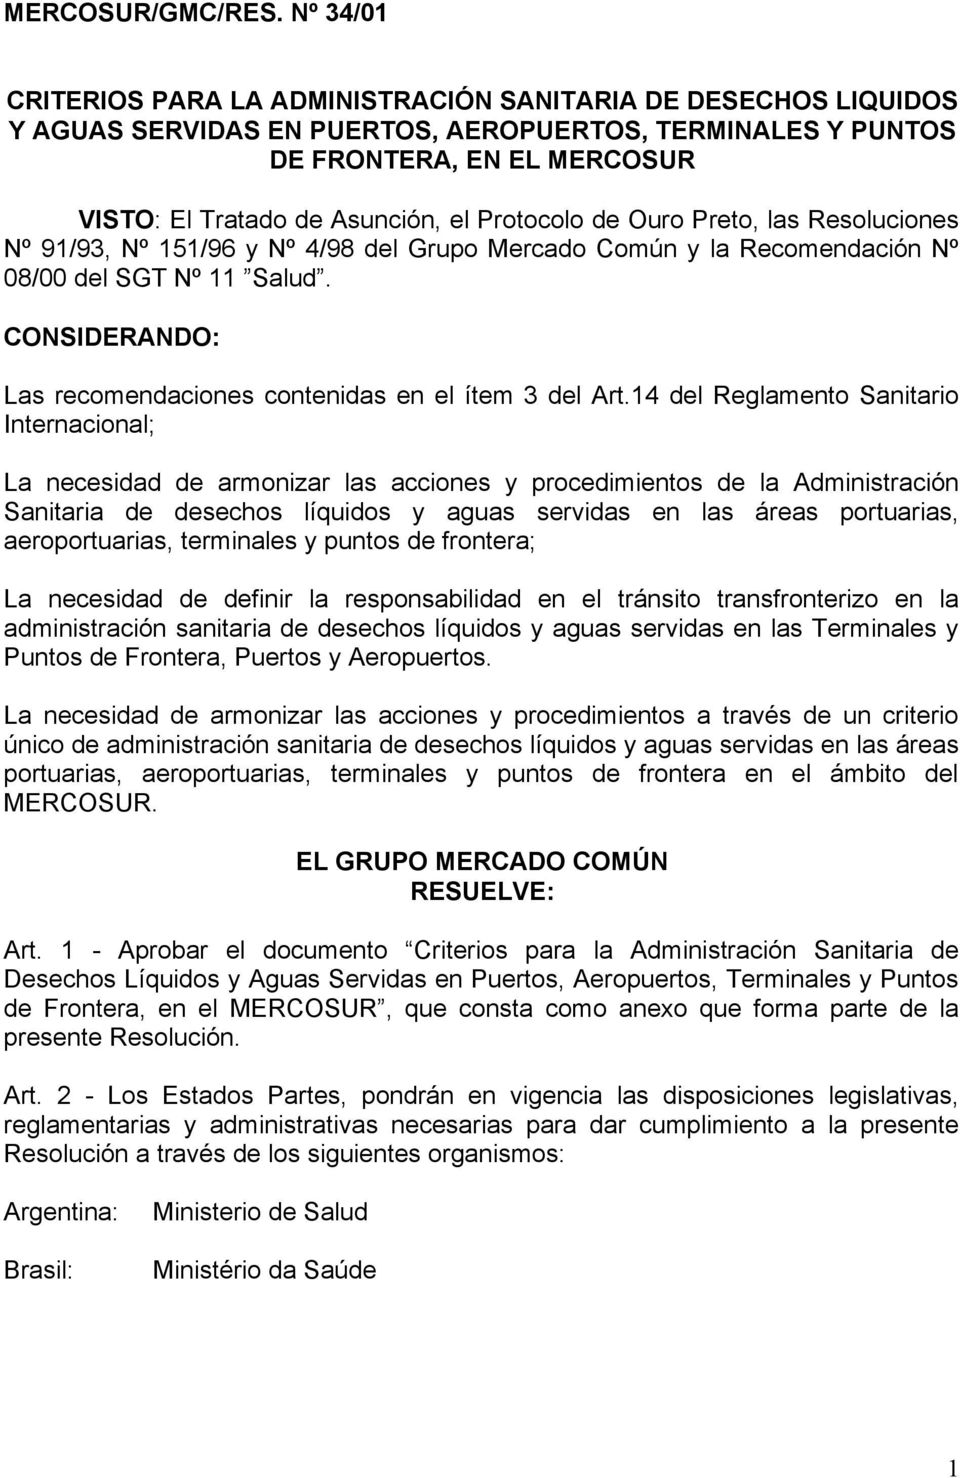 Protocolo de Ouro Preto, las Resoluciones Nº 91/93, Nº 151/96 y Nº 4/98 del Grupo Mercado Común y la Recomendación Nº 08/00 del SGT Nº 11 Salud.